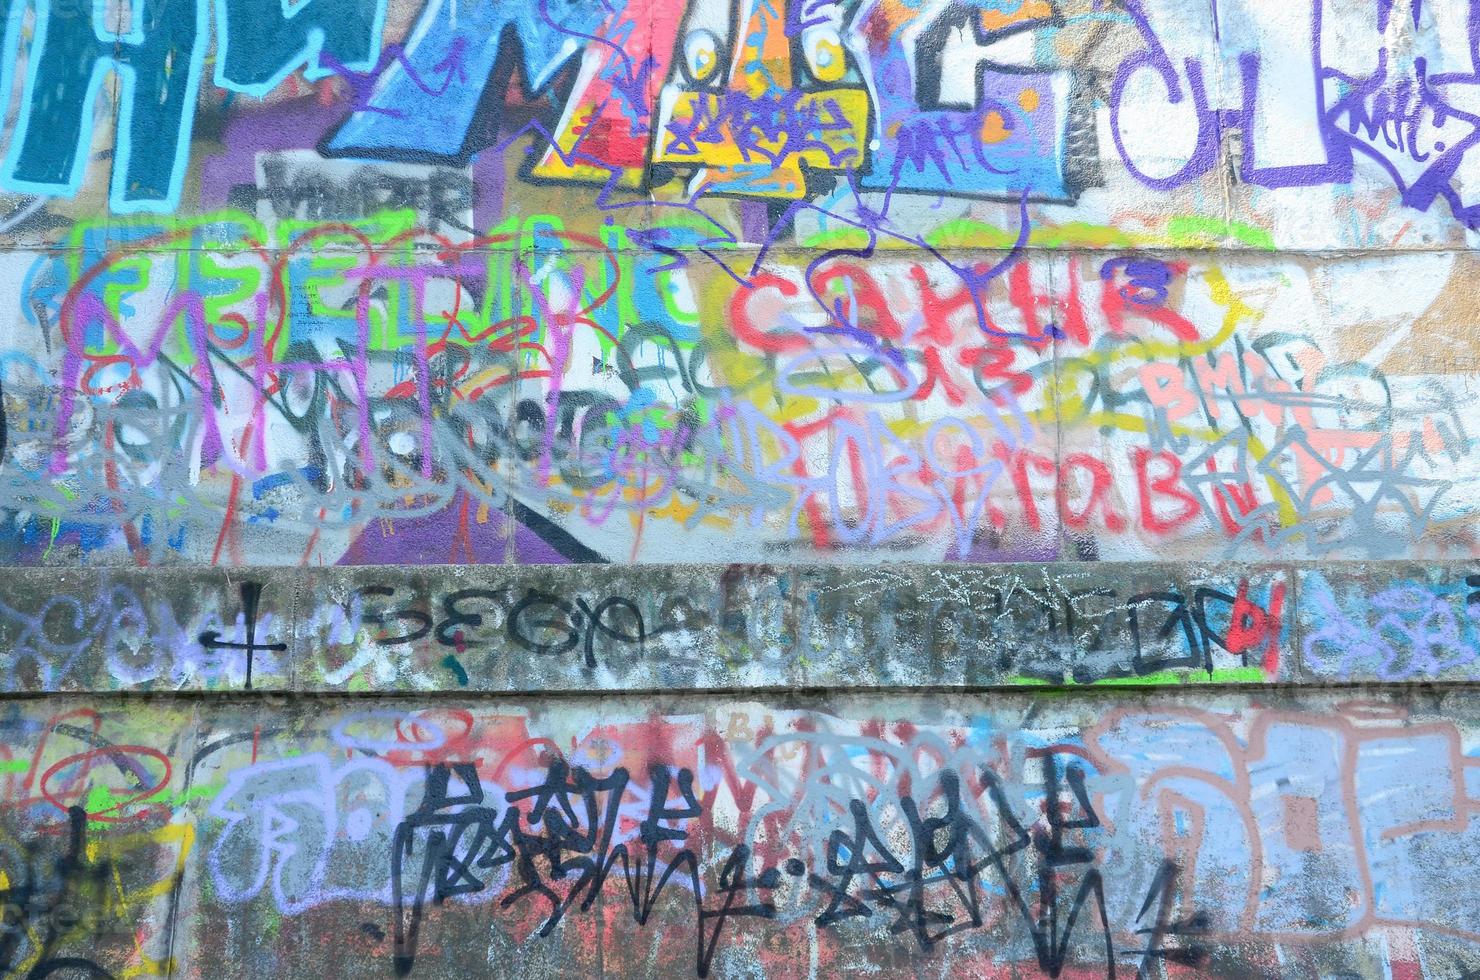 Fragment von Graffiti-Tags. Die alte Mauer ist mit Farbflecken im Stil der Street-Art-Kultur verwöhnt foto